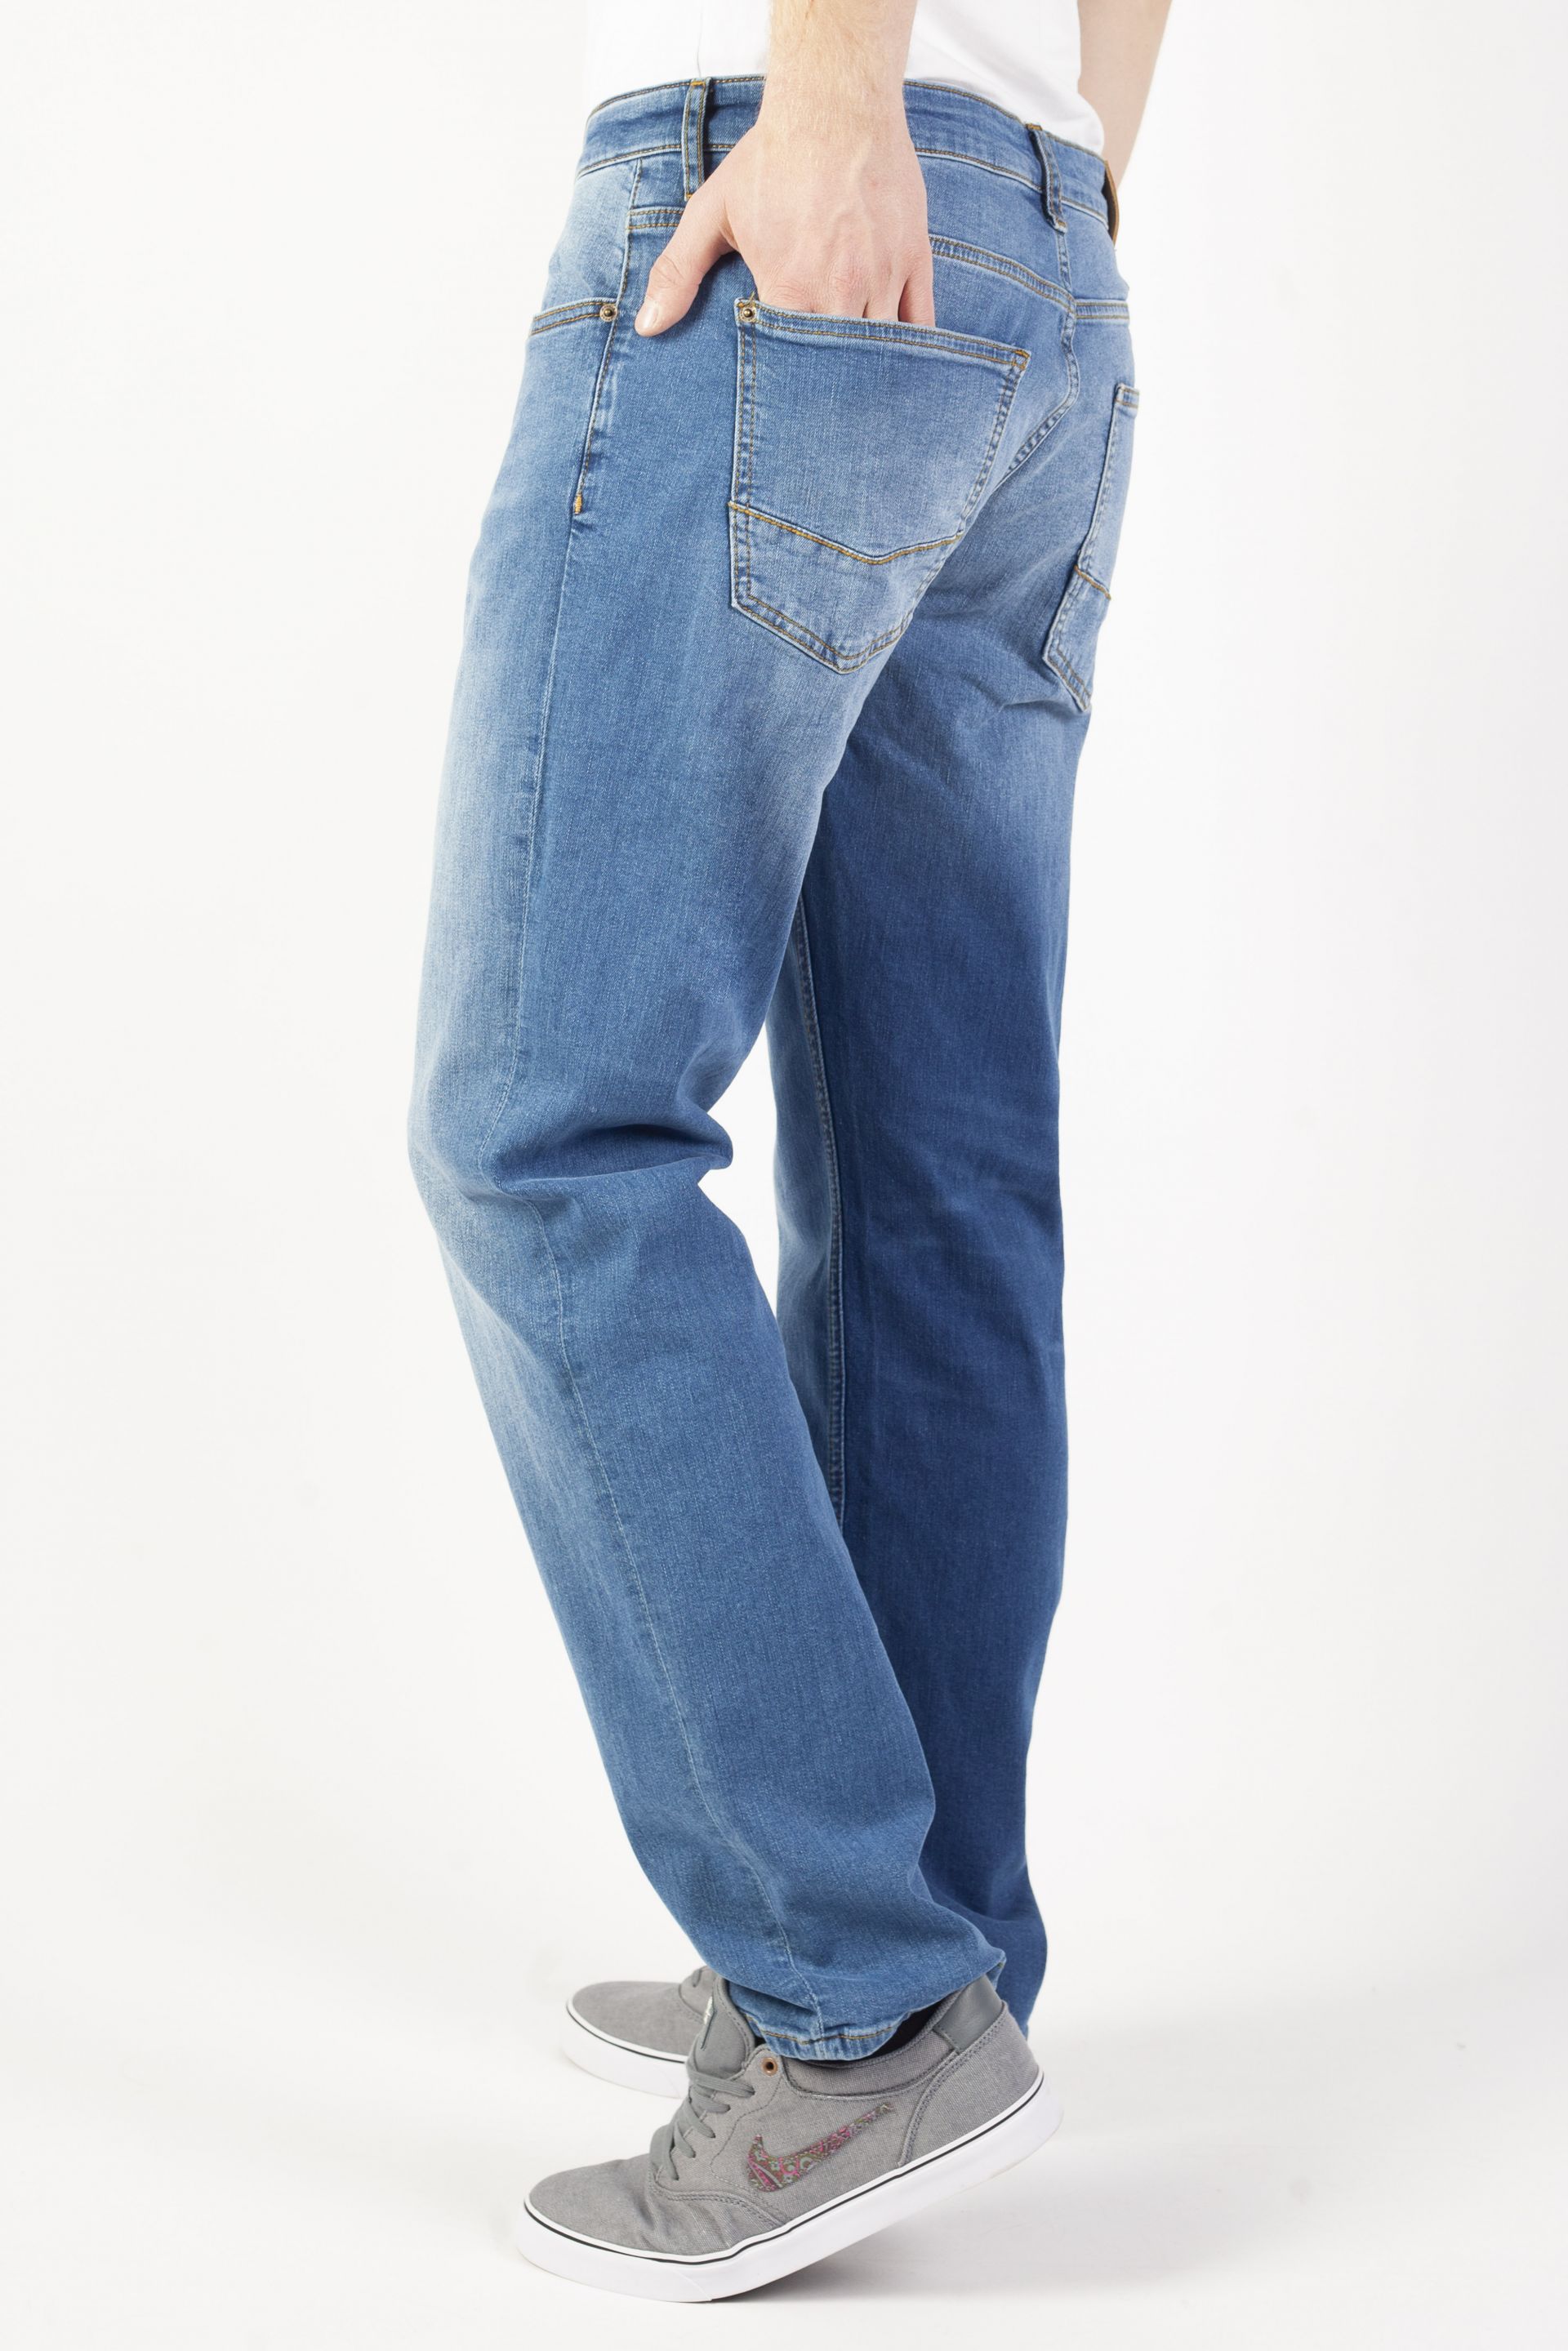 Jeans CROSS JEANS F194-645